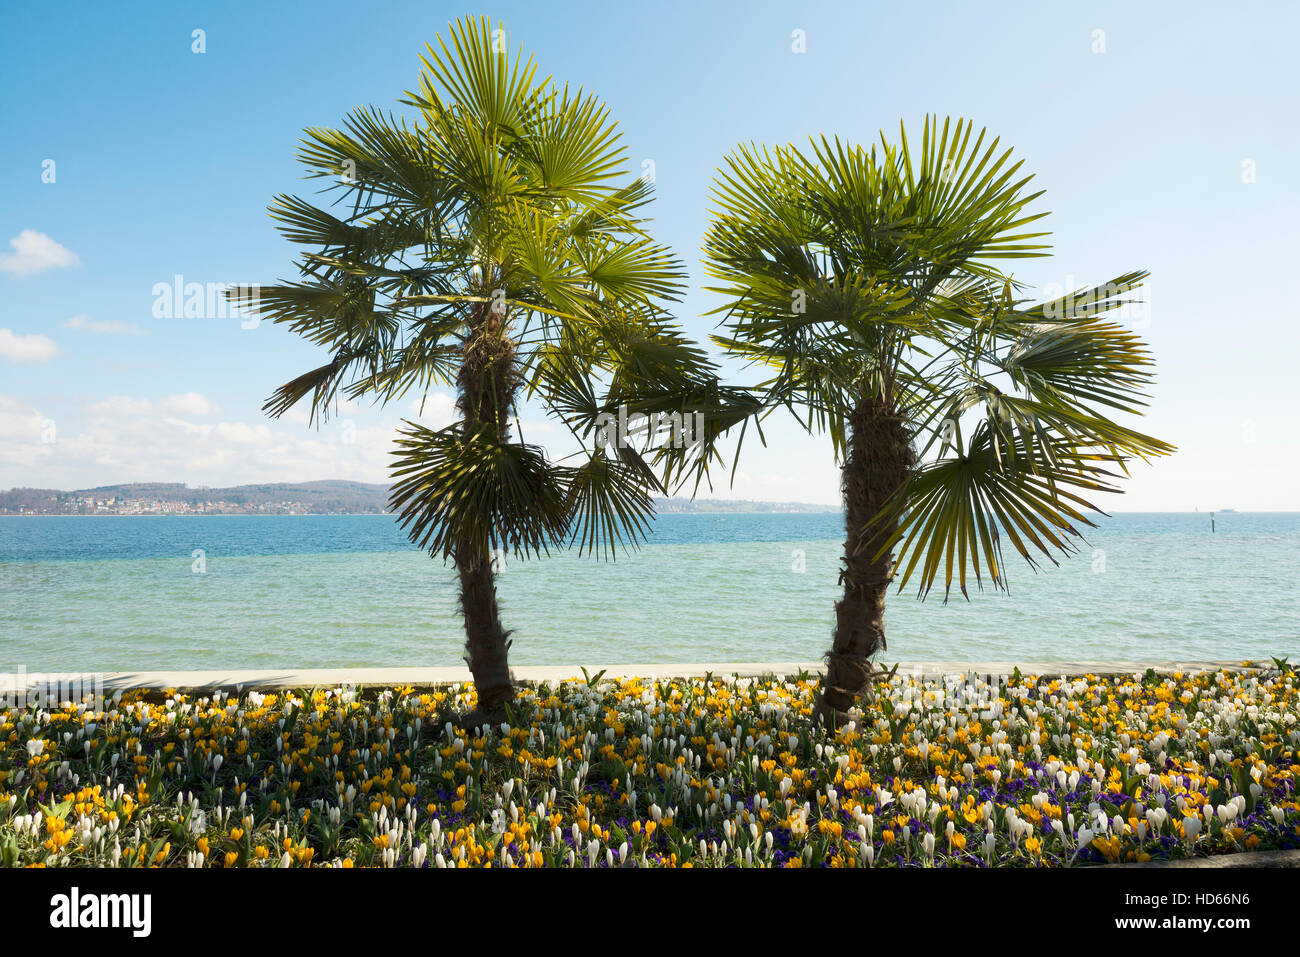 Fioriture di crochi in aiuola con alberi di palma, la molla, Isola di Mainau, isola dei fiori, di Costanza e il Lago di Costanza Foto Stock